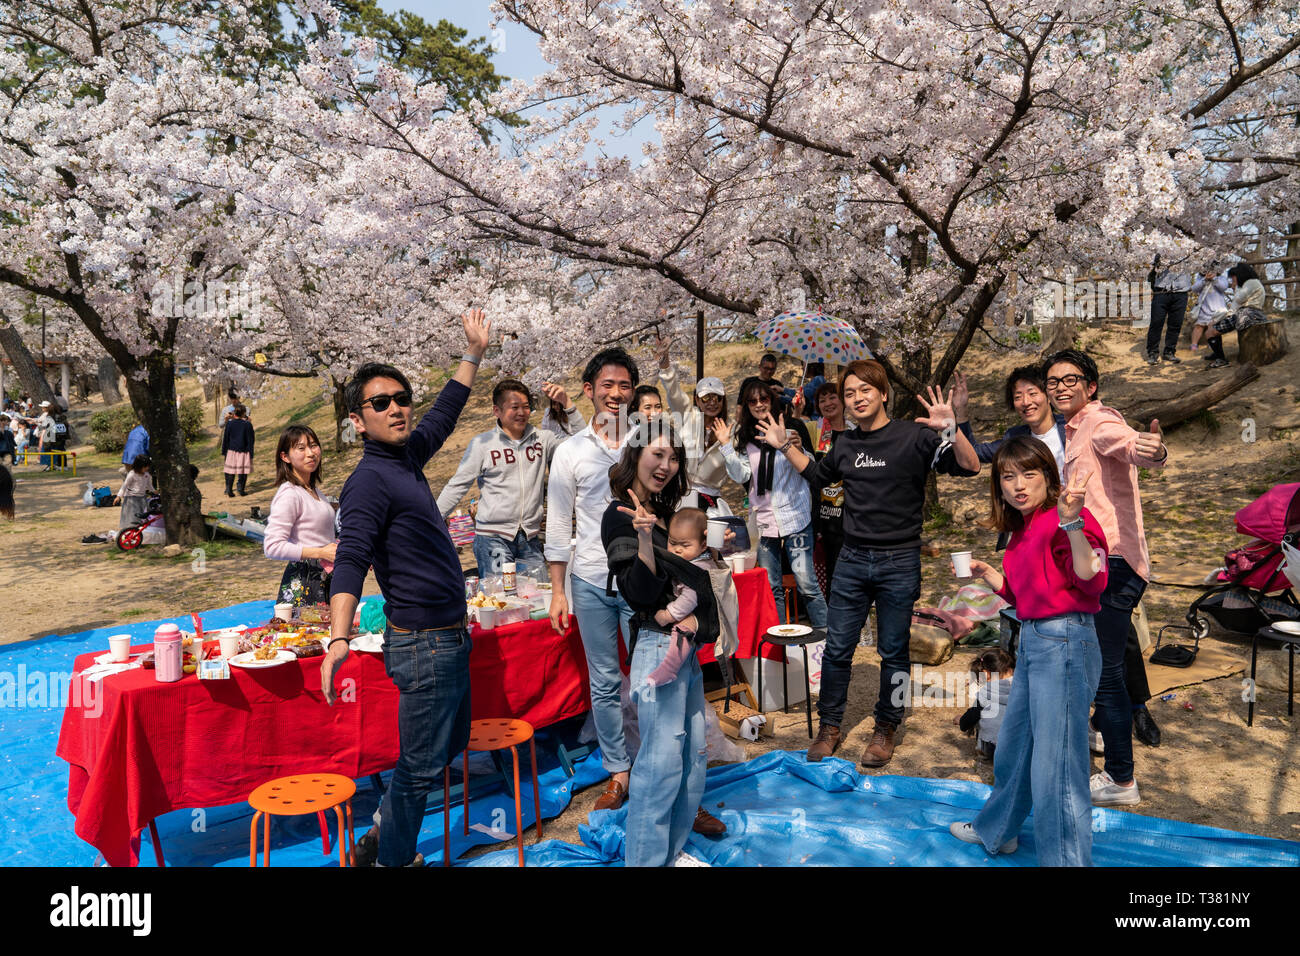 Menschen versammelt, die kirschblüten zu sehen, "Hana-mi', oder das traditionelle Picknick unter ihnen haben in der Heißen das zweimal jährlich erscheinende Mode-Special Sonnenschein an Shukugawa, in der Nähe der Nishinomiya in Japan. Gruppe von Menschen, die sich dem Betrachter zu Gesicht, was Frieden unterzeichnen und lächelnd. Ein beliebter Aussichtspunkt, mit einer Reihe von Cherry Blossom Bäume auf beiden Seiten des Flusses. Stockfoto